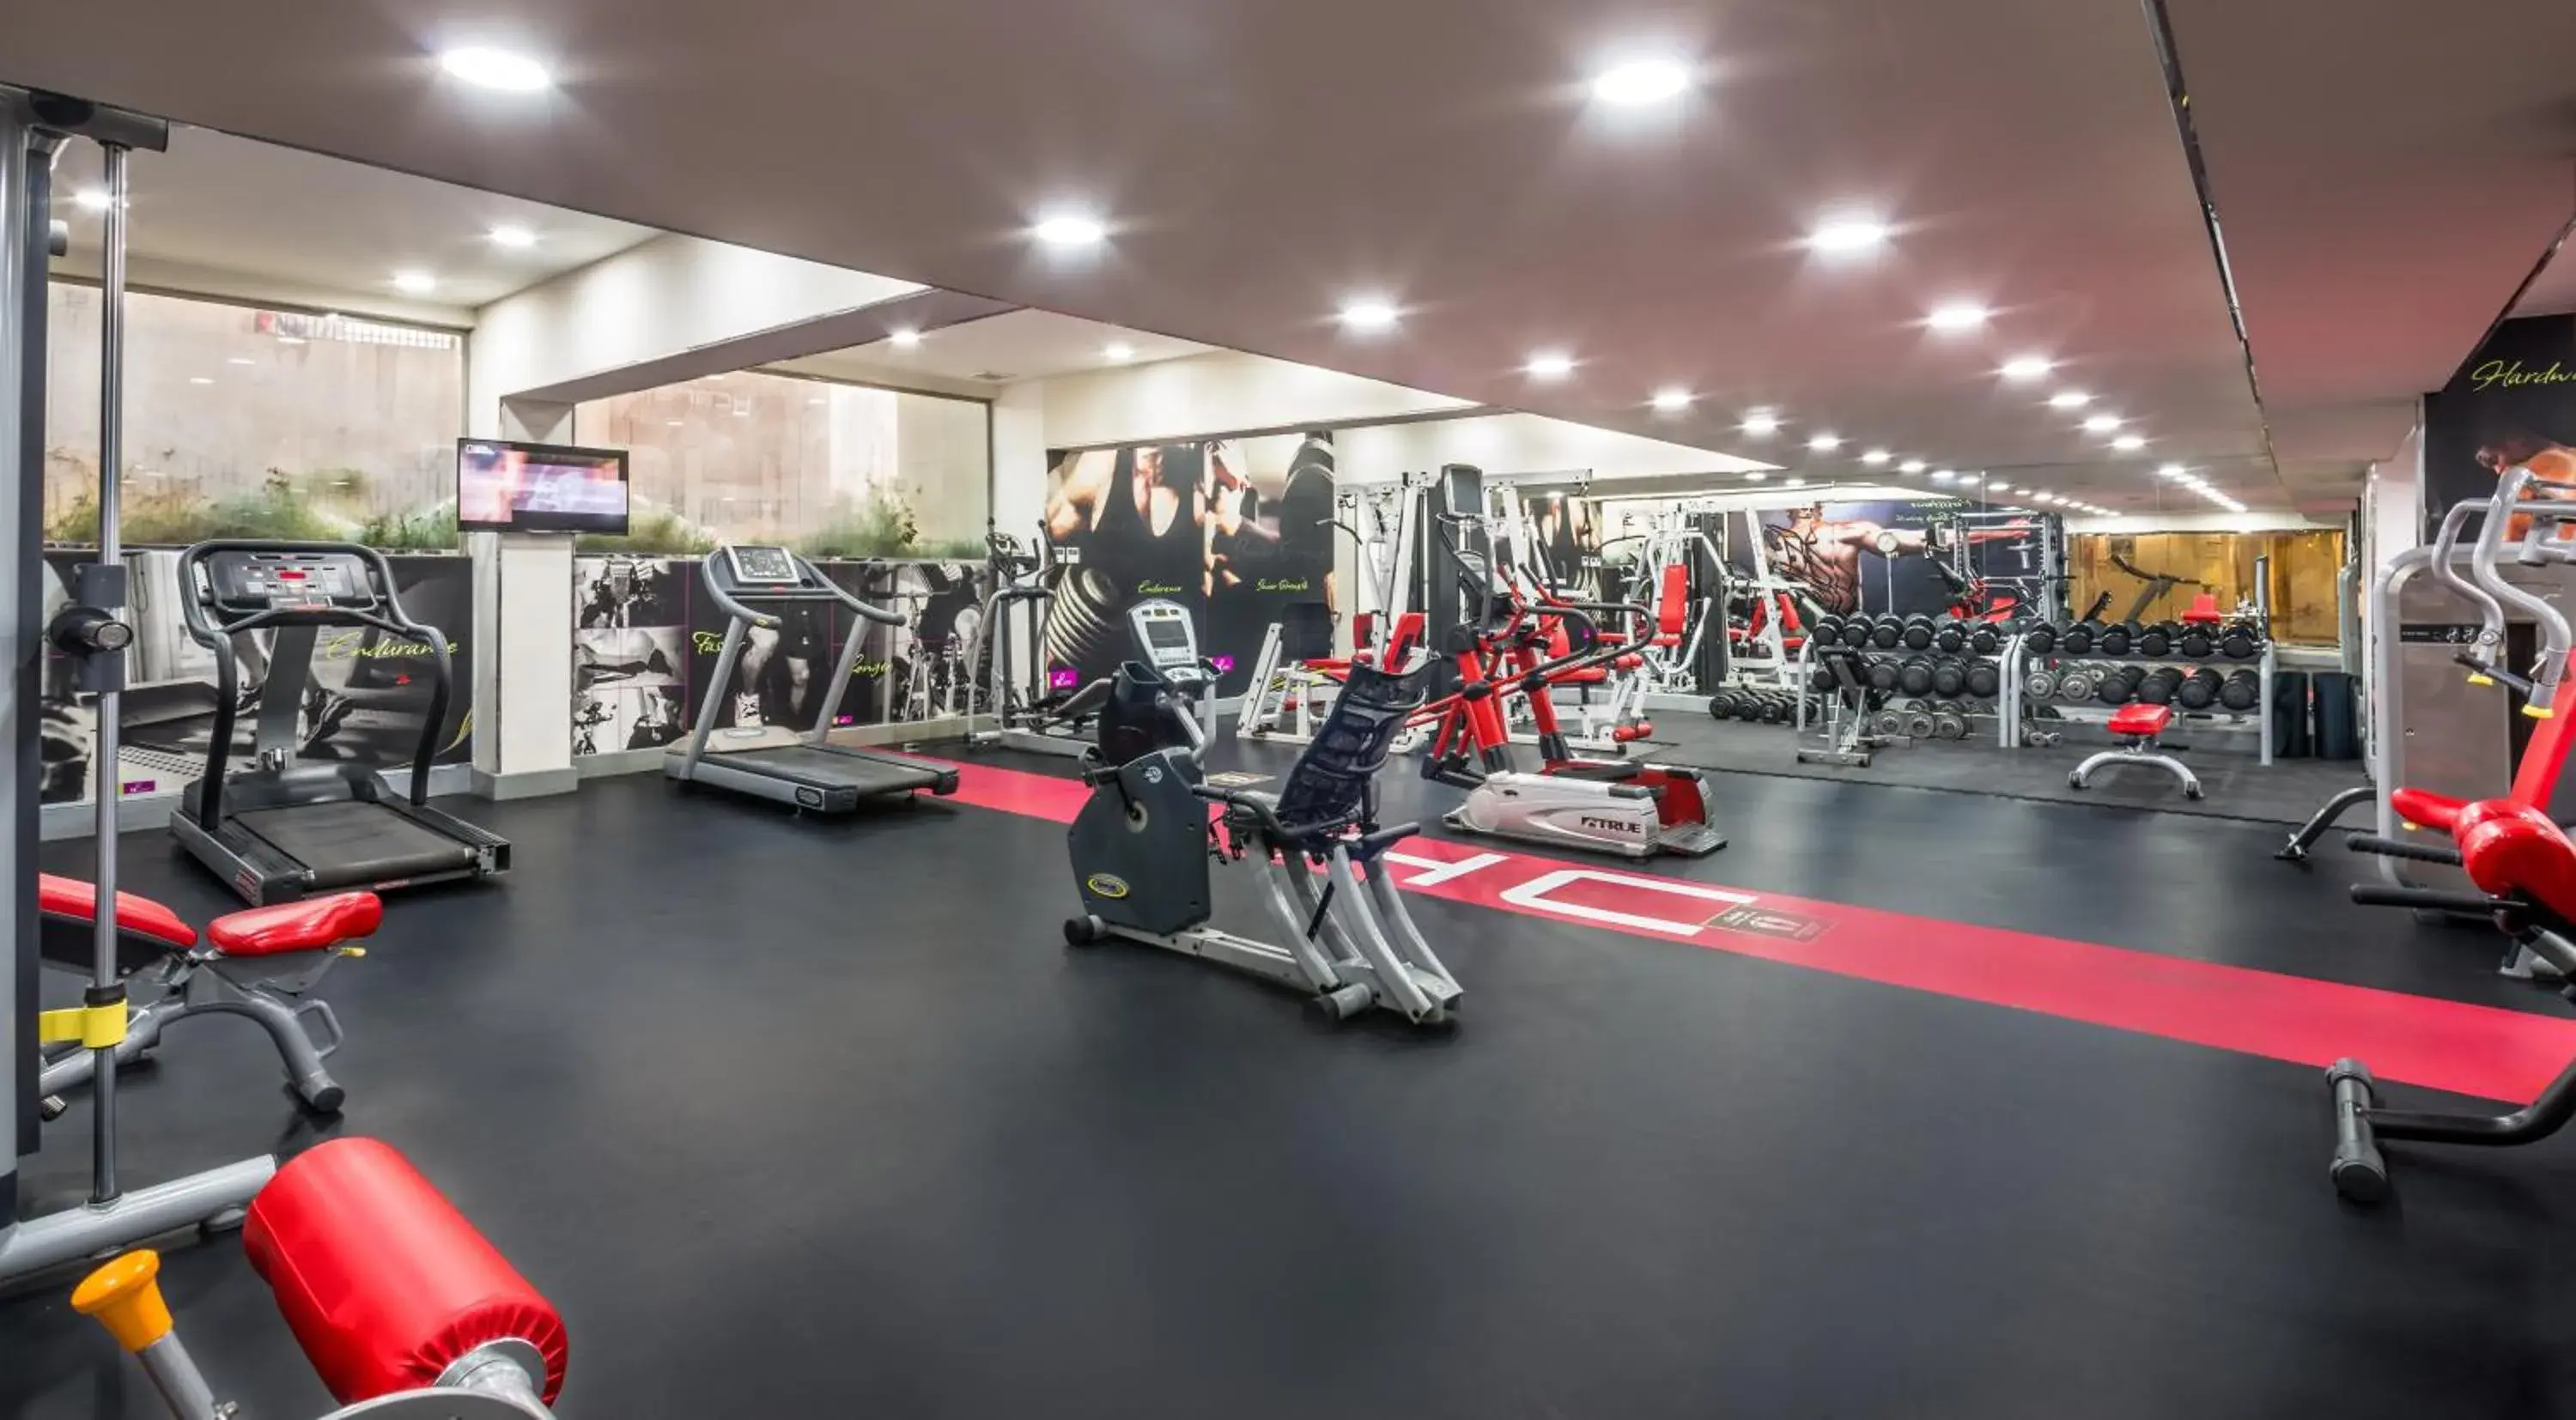 Fitness centre/facilities, Fitness Center/Facilities in Golden Tulip Qasr Al Nasiriah